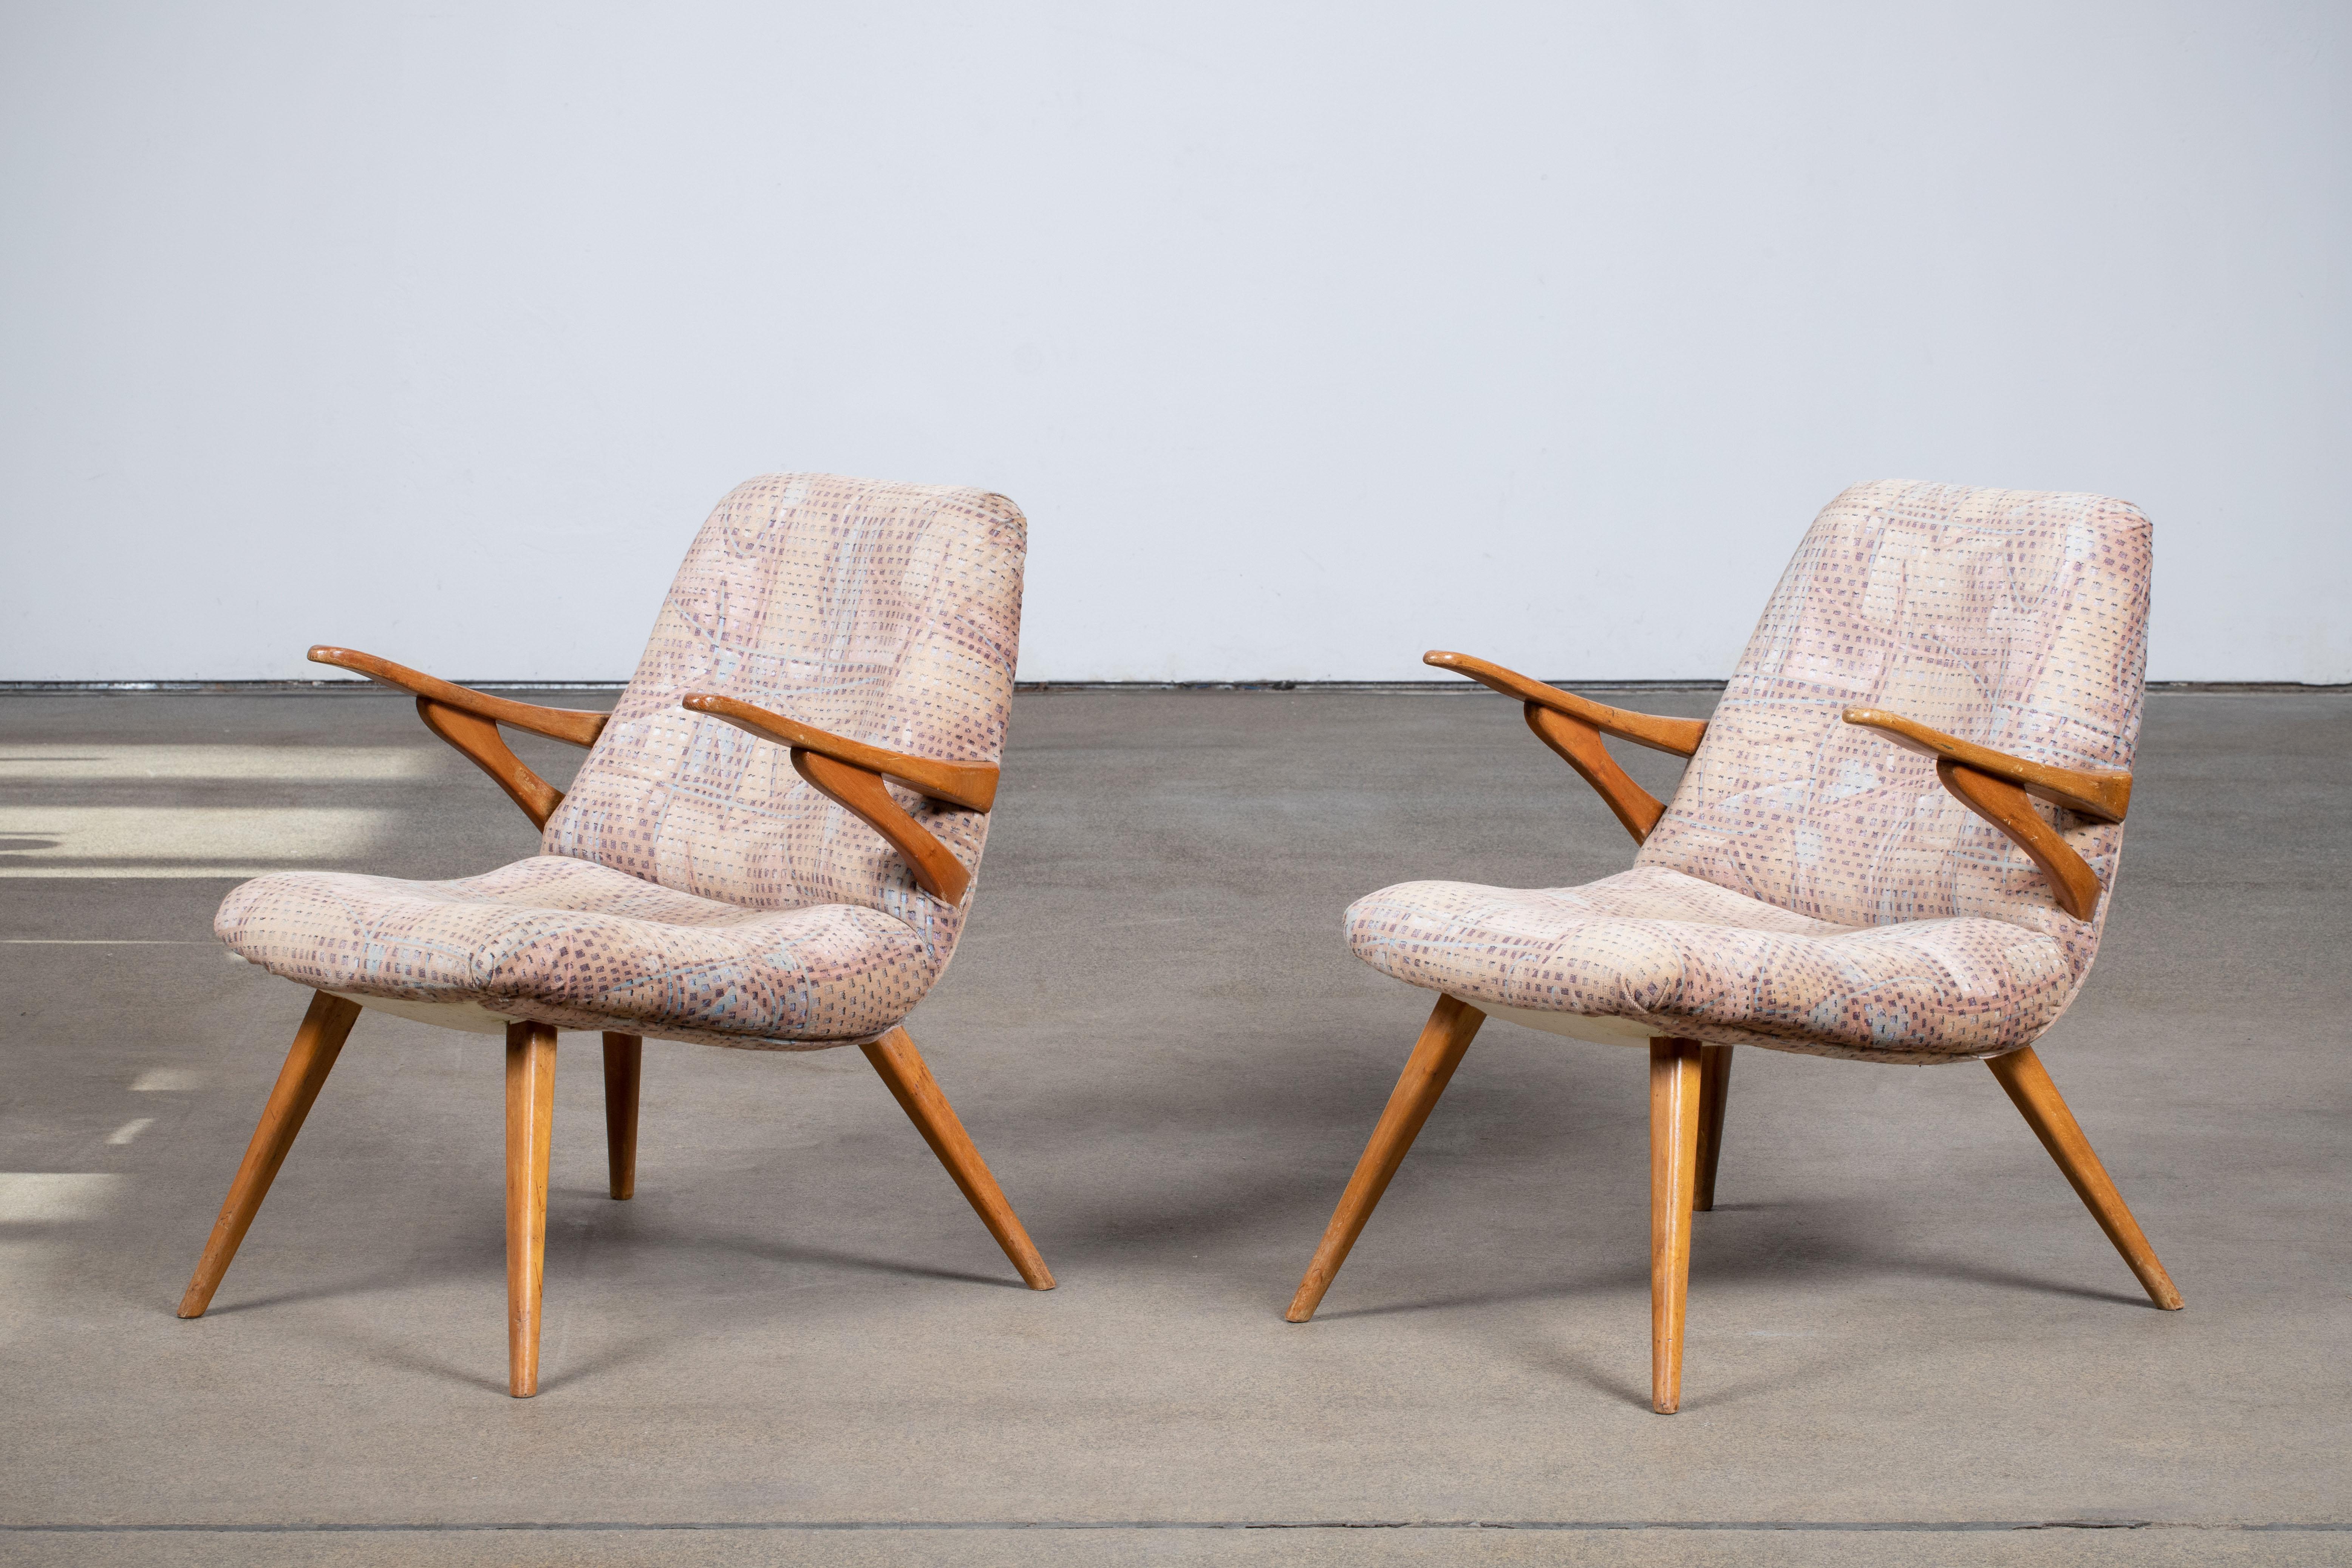 Paar Liegestühle, Deutschland, 1960.
Diese visuell einladende und äußerst bequeme Sitzgelegenheit. Die Stühle sind mit einem originalen Vintage-Stoff bezogen und stehen auf konischen Beinen. 
Der Stoff ist in seinem ursprünglichen Zustand mit